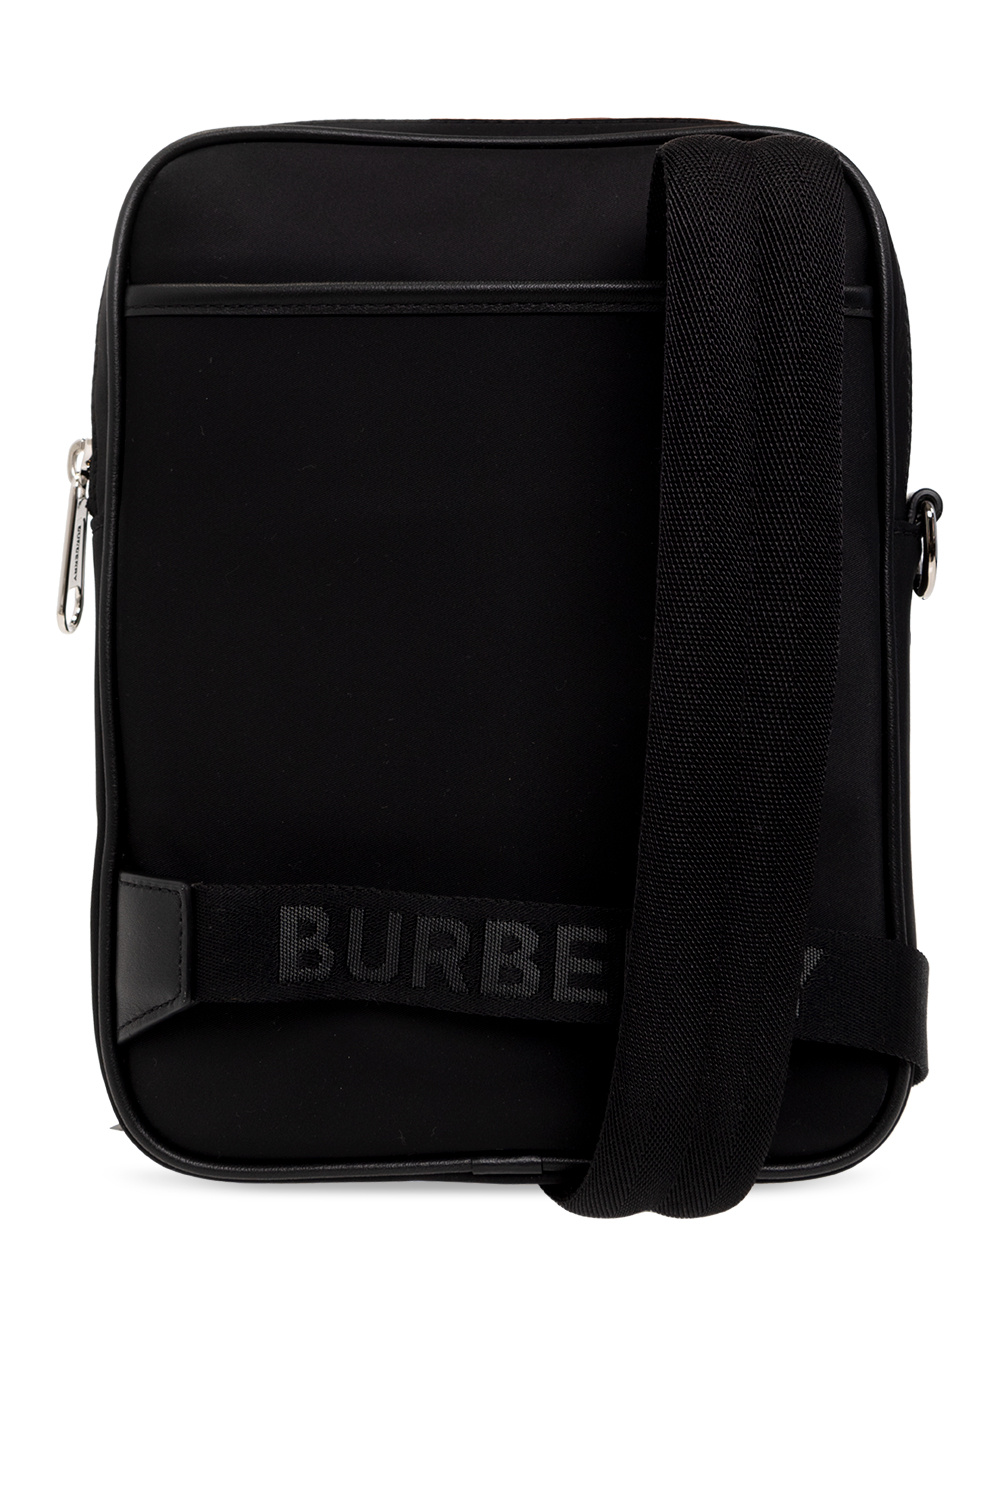 Burberry black canvas & leather lined lrg tote shopper travel shoulder bag